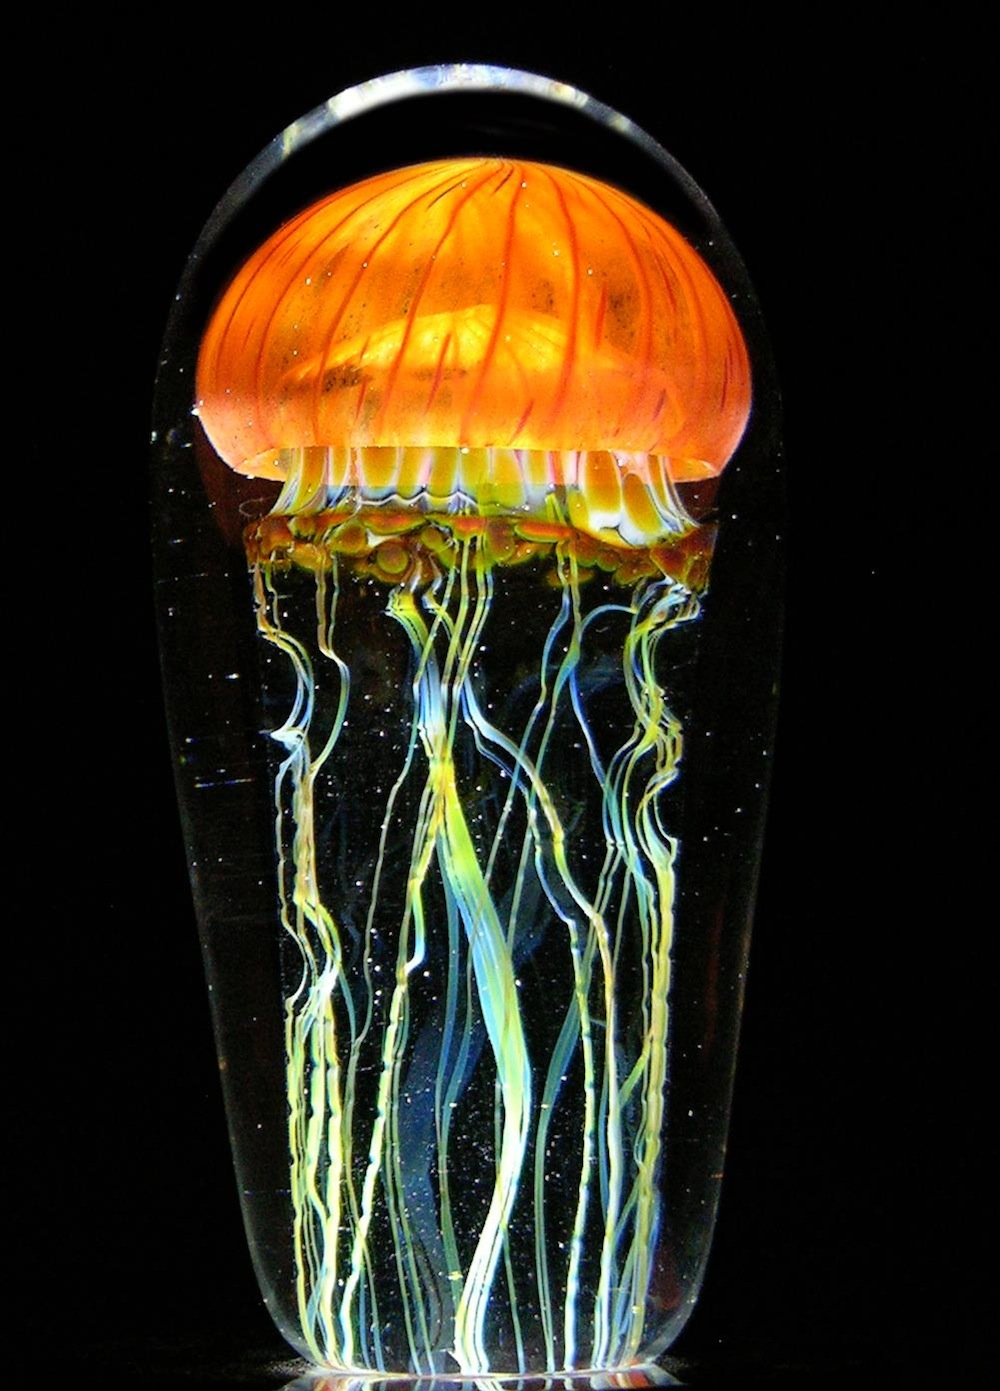 Стеклянные медузы в капсулах-вазах от Ричарда Сатава выглядят очень реалистично